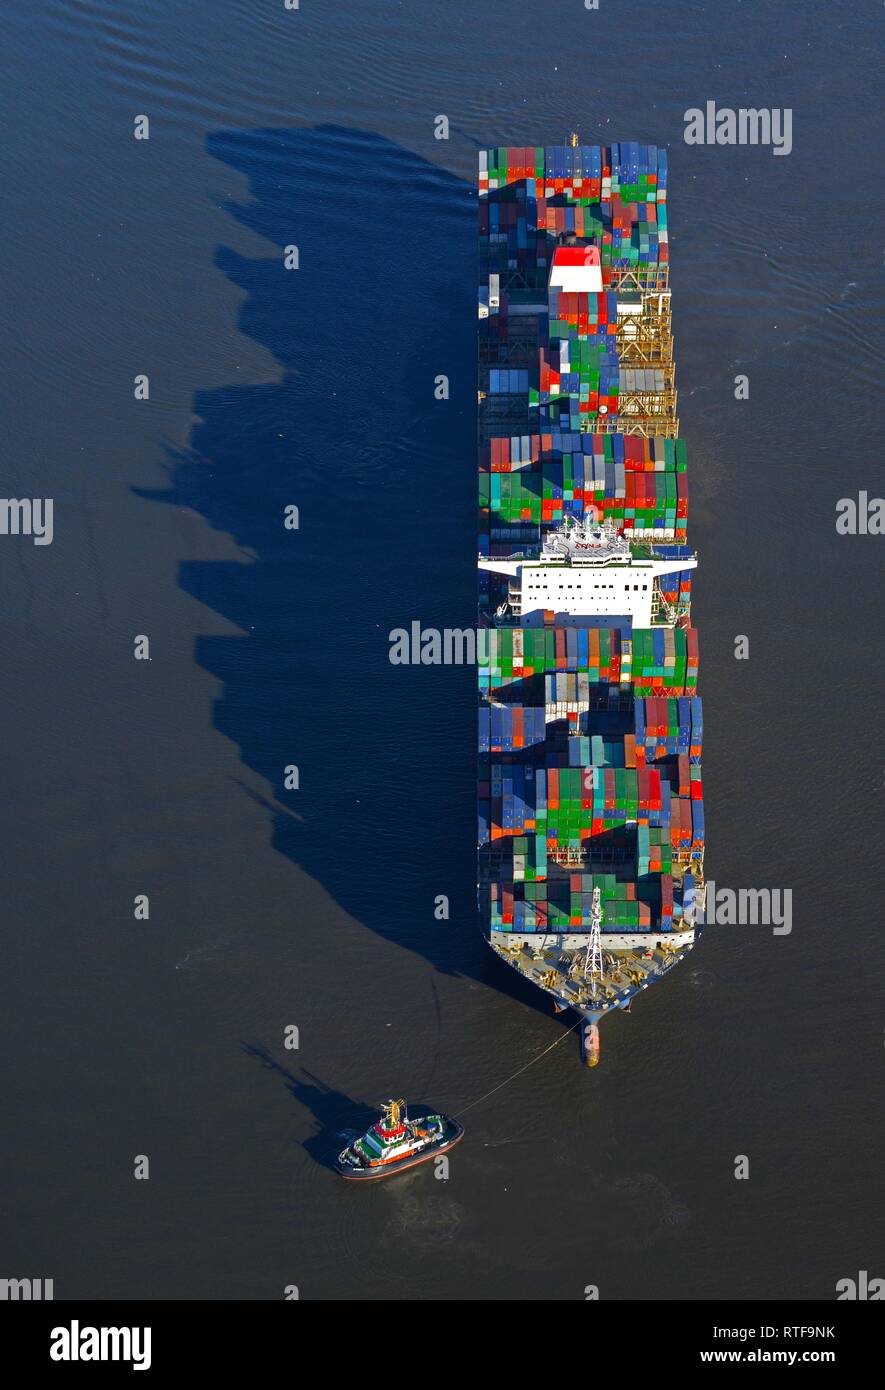 Luftaufnahme, Containerschiff auf der Elbe, Hamburg, Deutschland Stockfoto